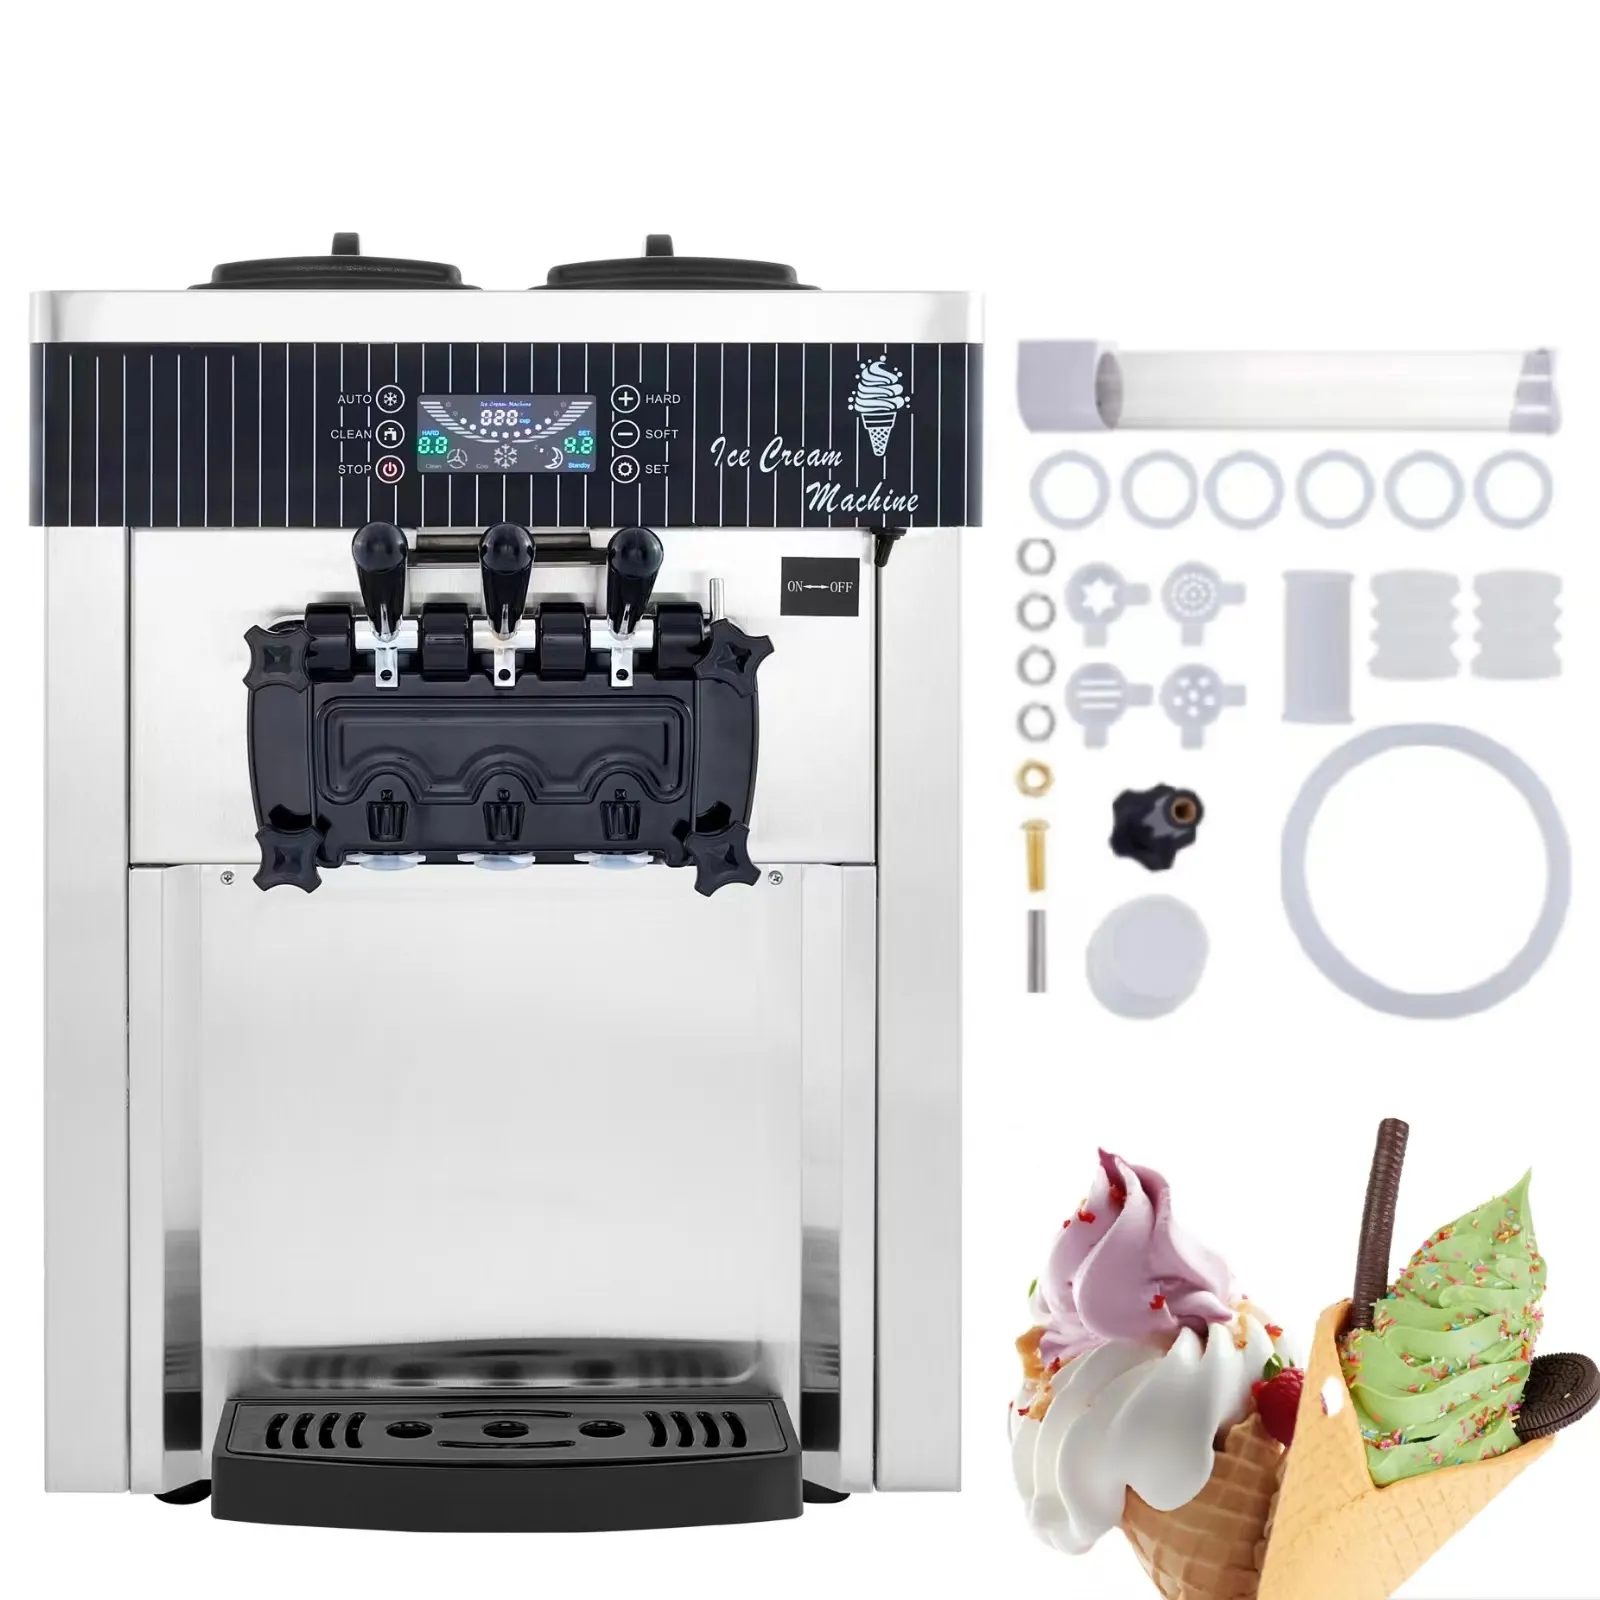 WeWorkソフトクリームマシン2200W20-28L/時間アイスクリームメーカーLEDディスプレイ付き自動クリーンカウンタートップアイスクリームマシン